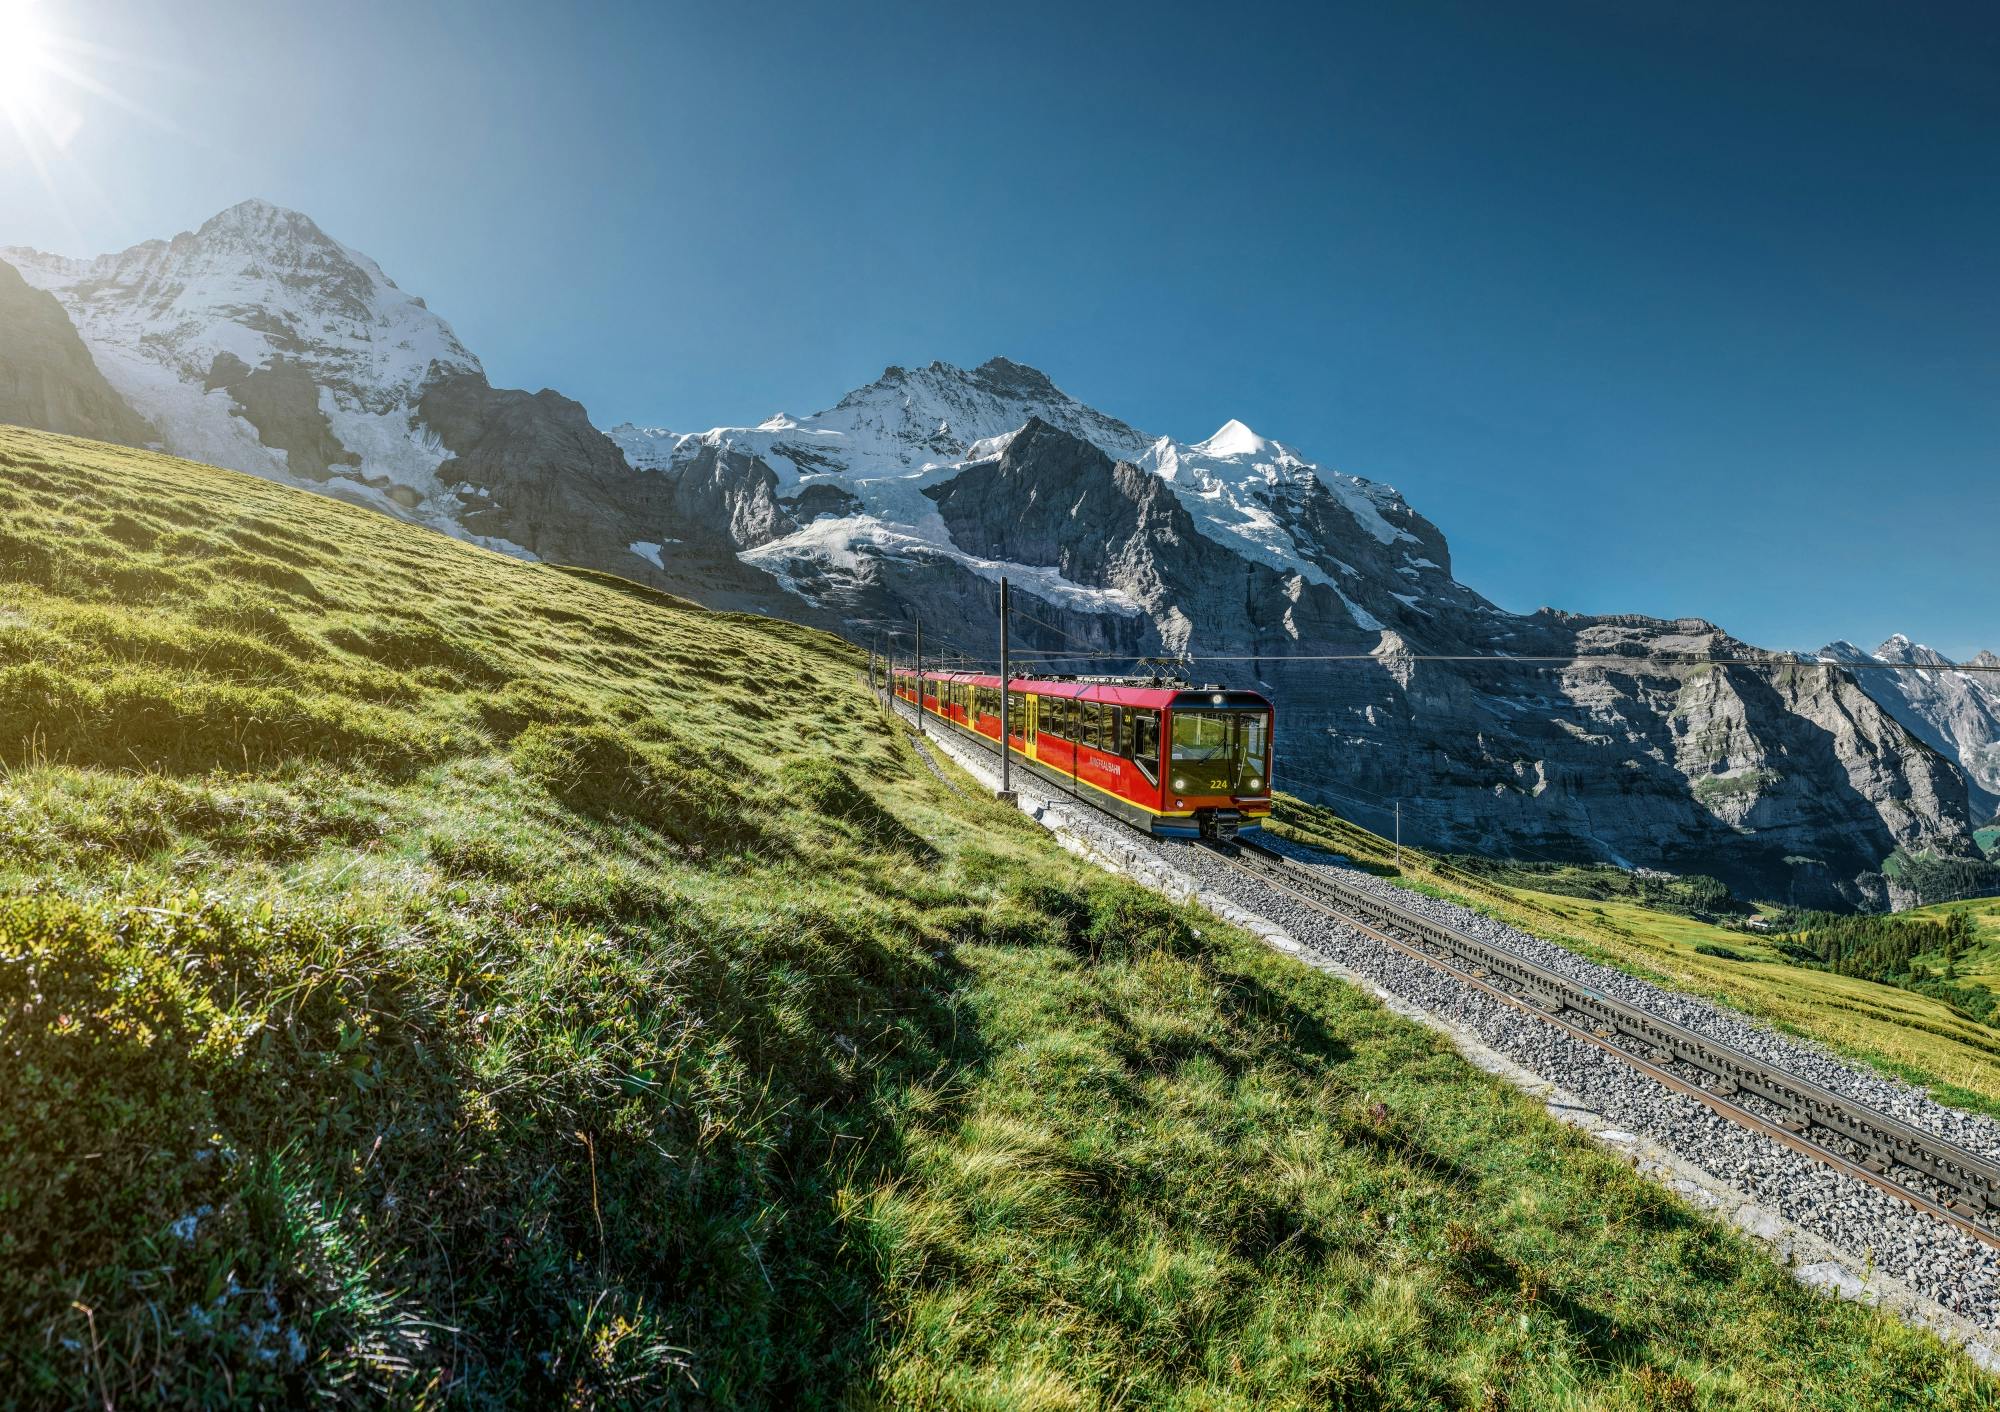 Jungfraujoch-excursie vanuit Zürich